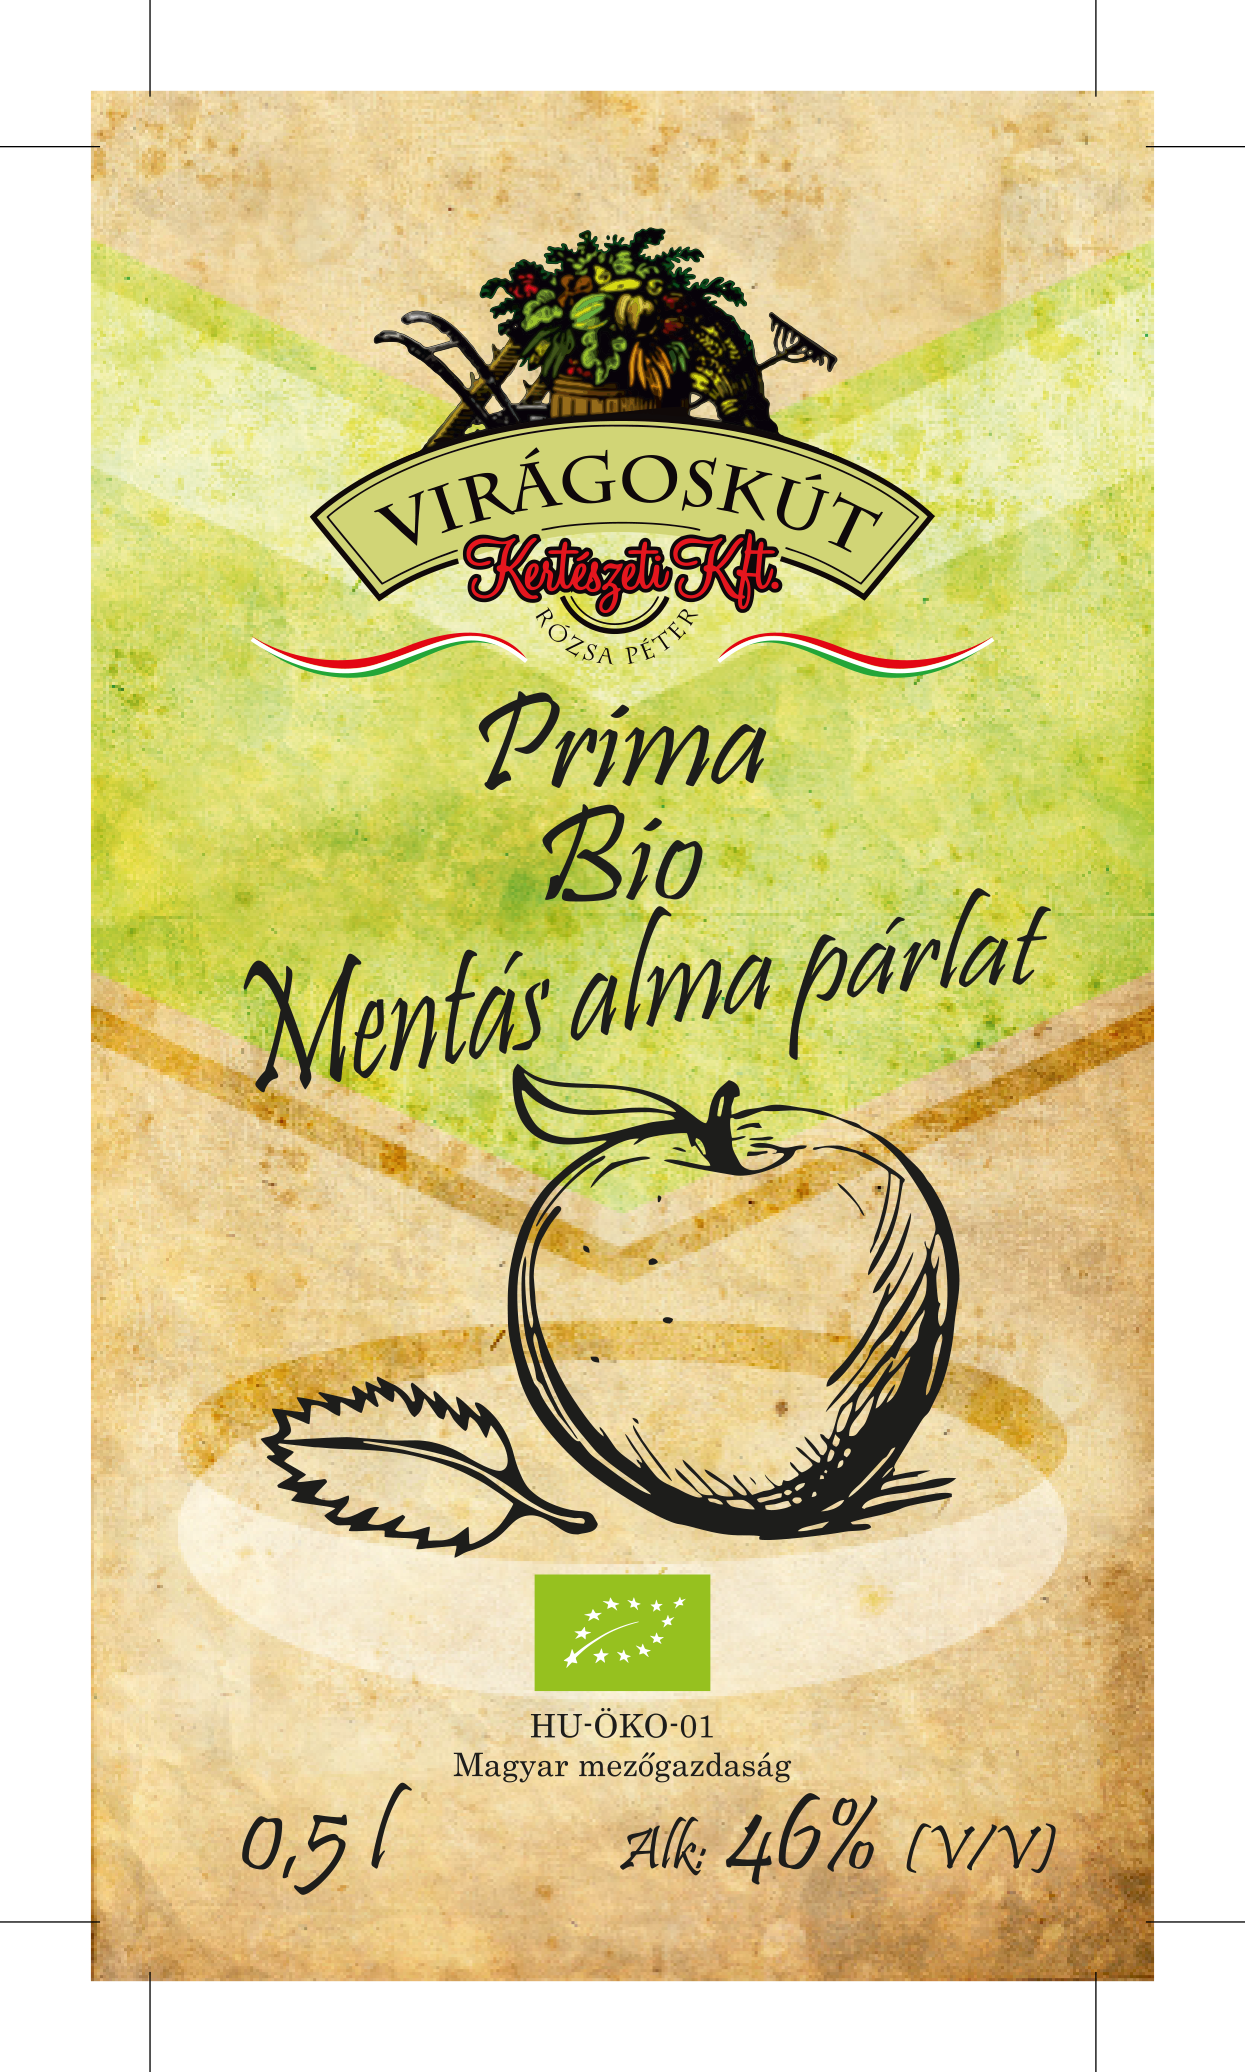 Bio mentás alma párlat - Prima 500ml 46% /Virágoskút Kft./